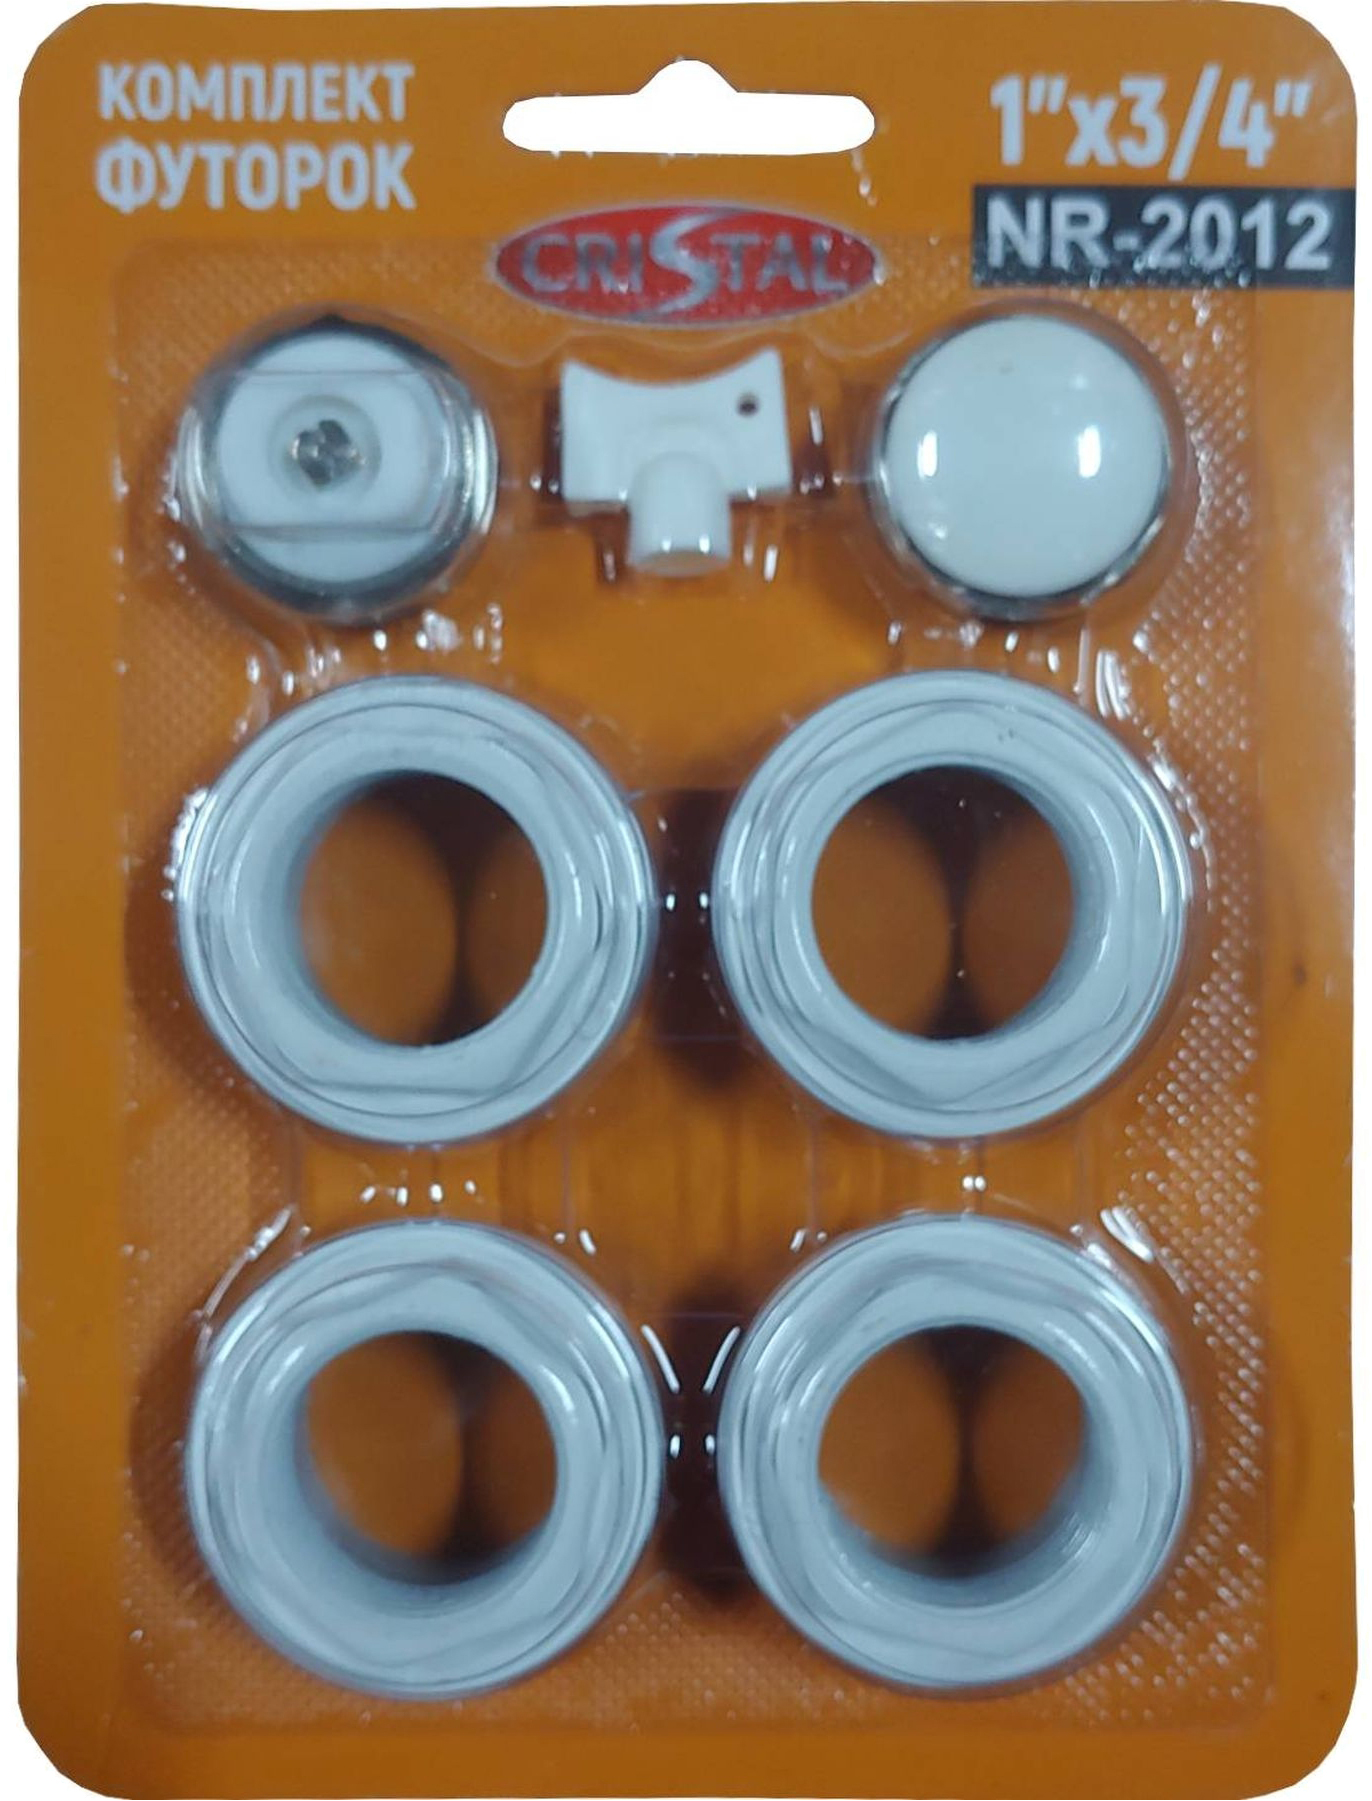 Комплект футорок секционного радиатора Cristal NR-2012 3/4″(HT 404) в интернет-магазине, главное фото